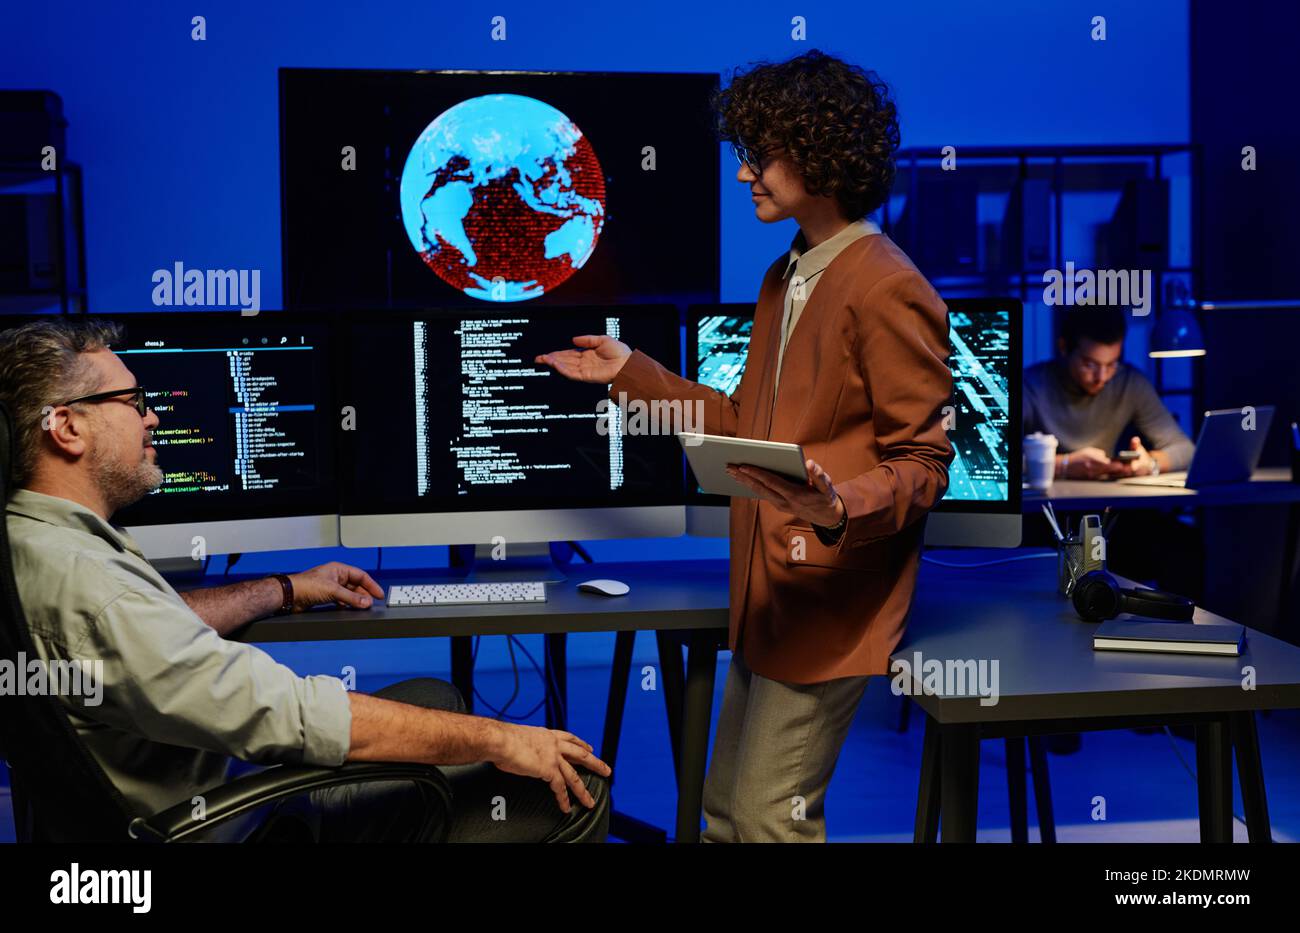 Jeune femme confiante programmeur de faire rapport à un collègue de sexe masculin mature tout en pointant sur l'écran d'ordinateur avec des données codées Banque D'Images